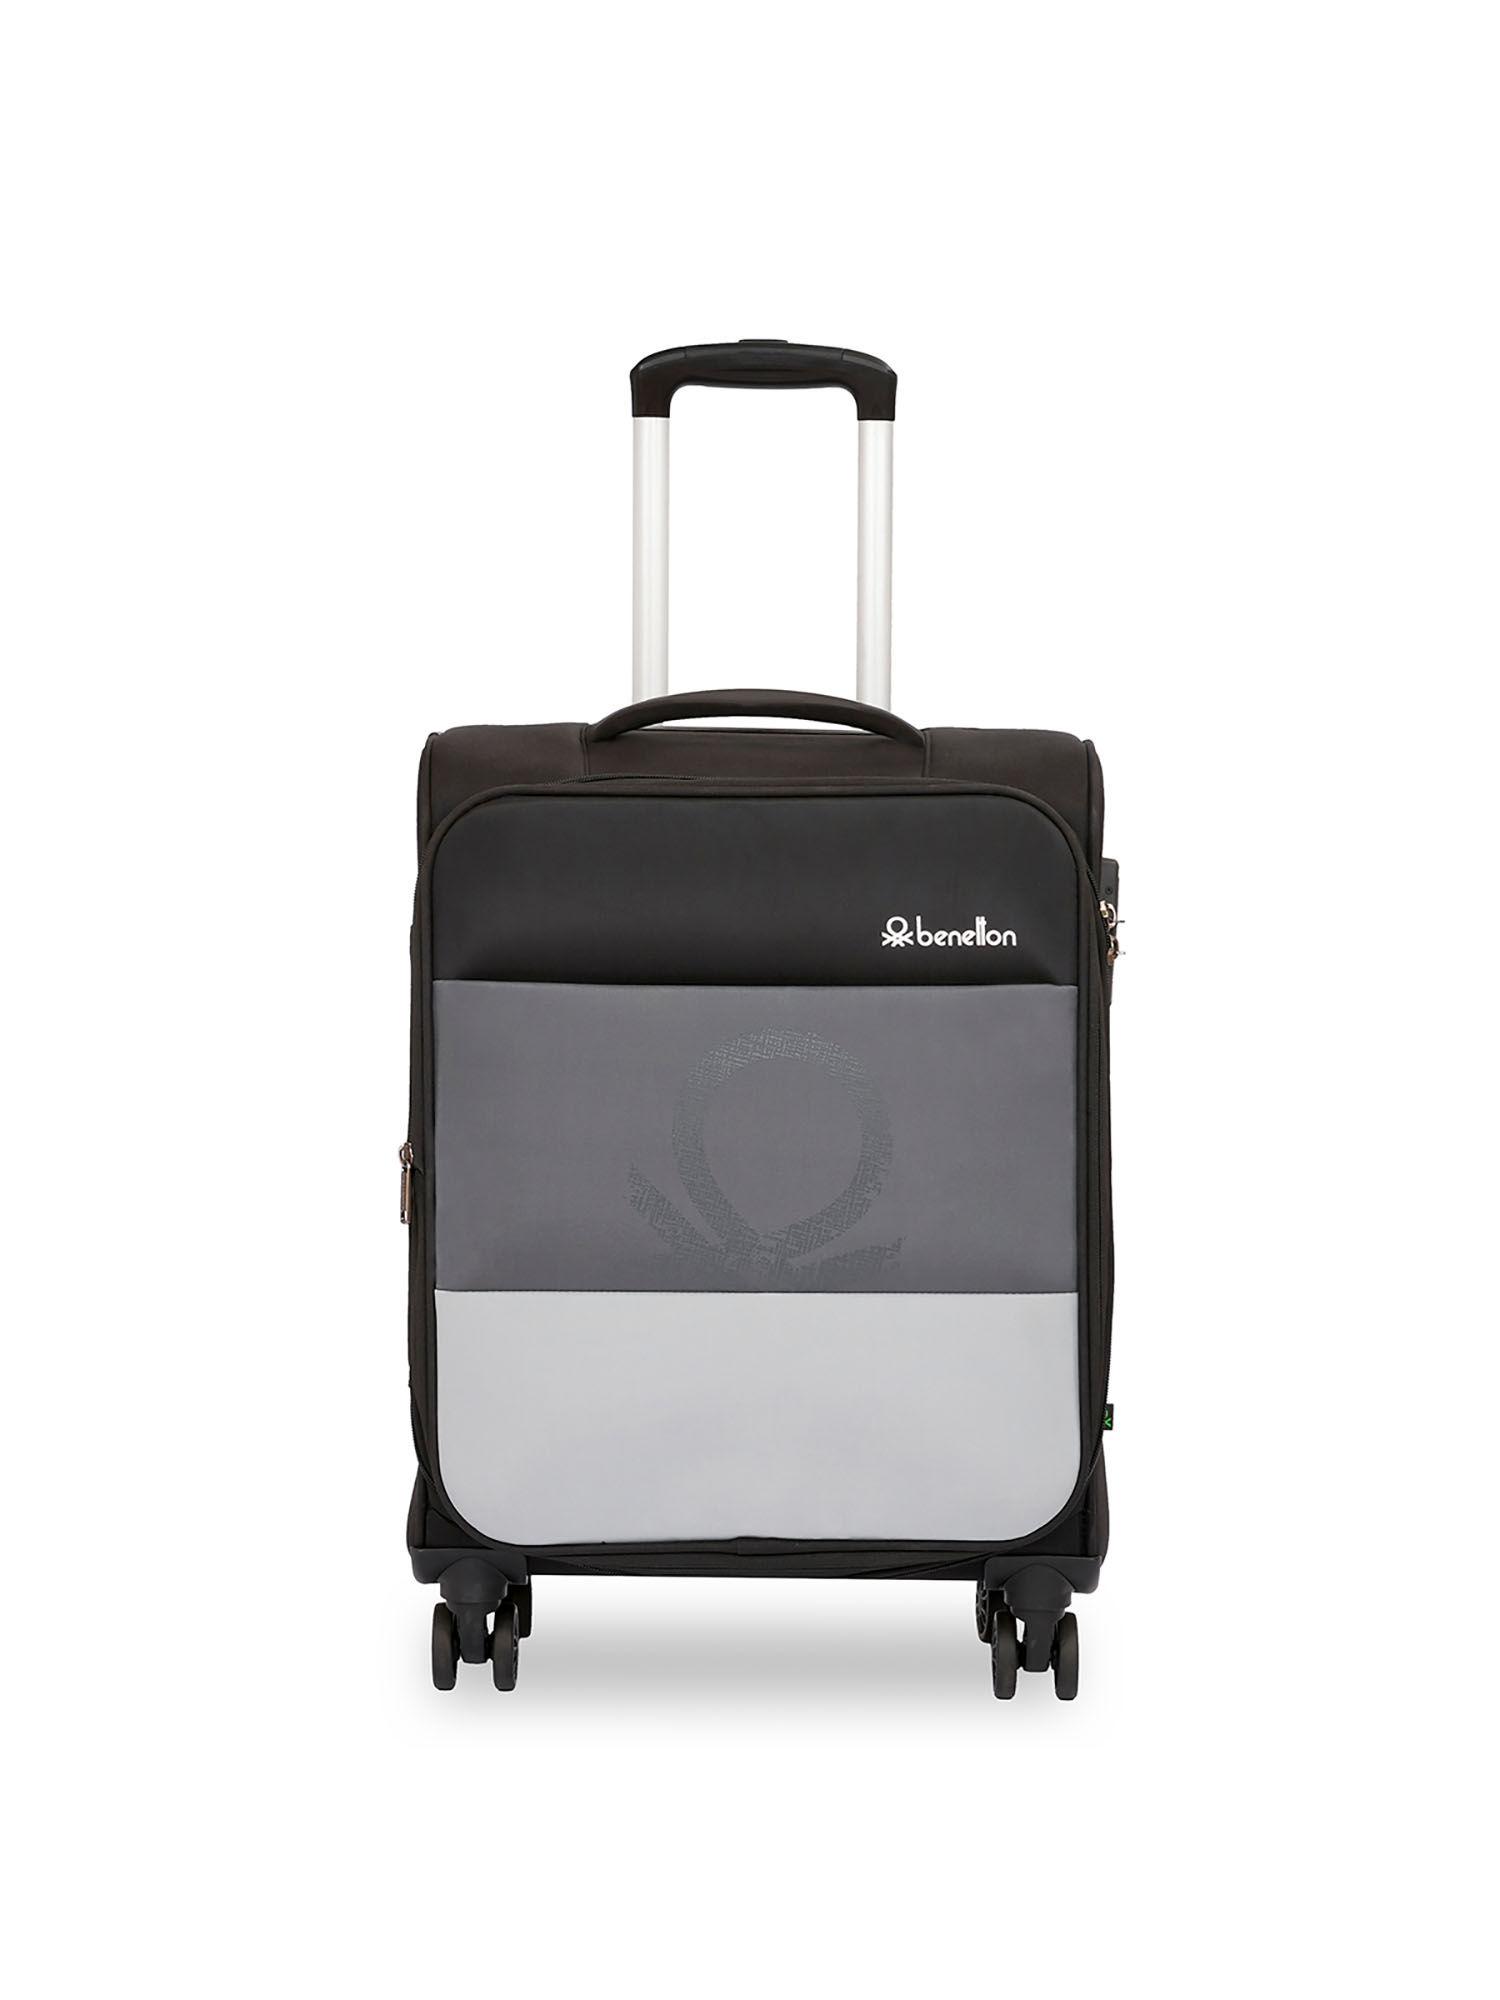 archimedes unisex soft luggage black, grey, 58 cm trolley bag